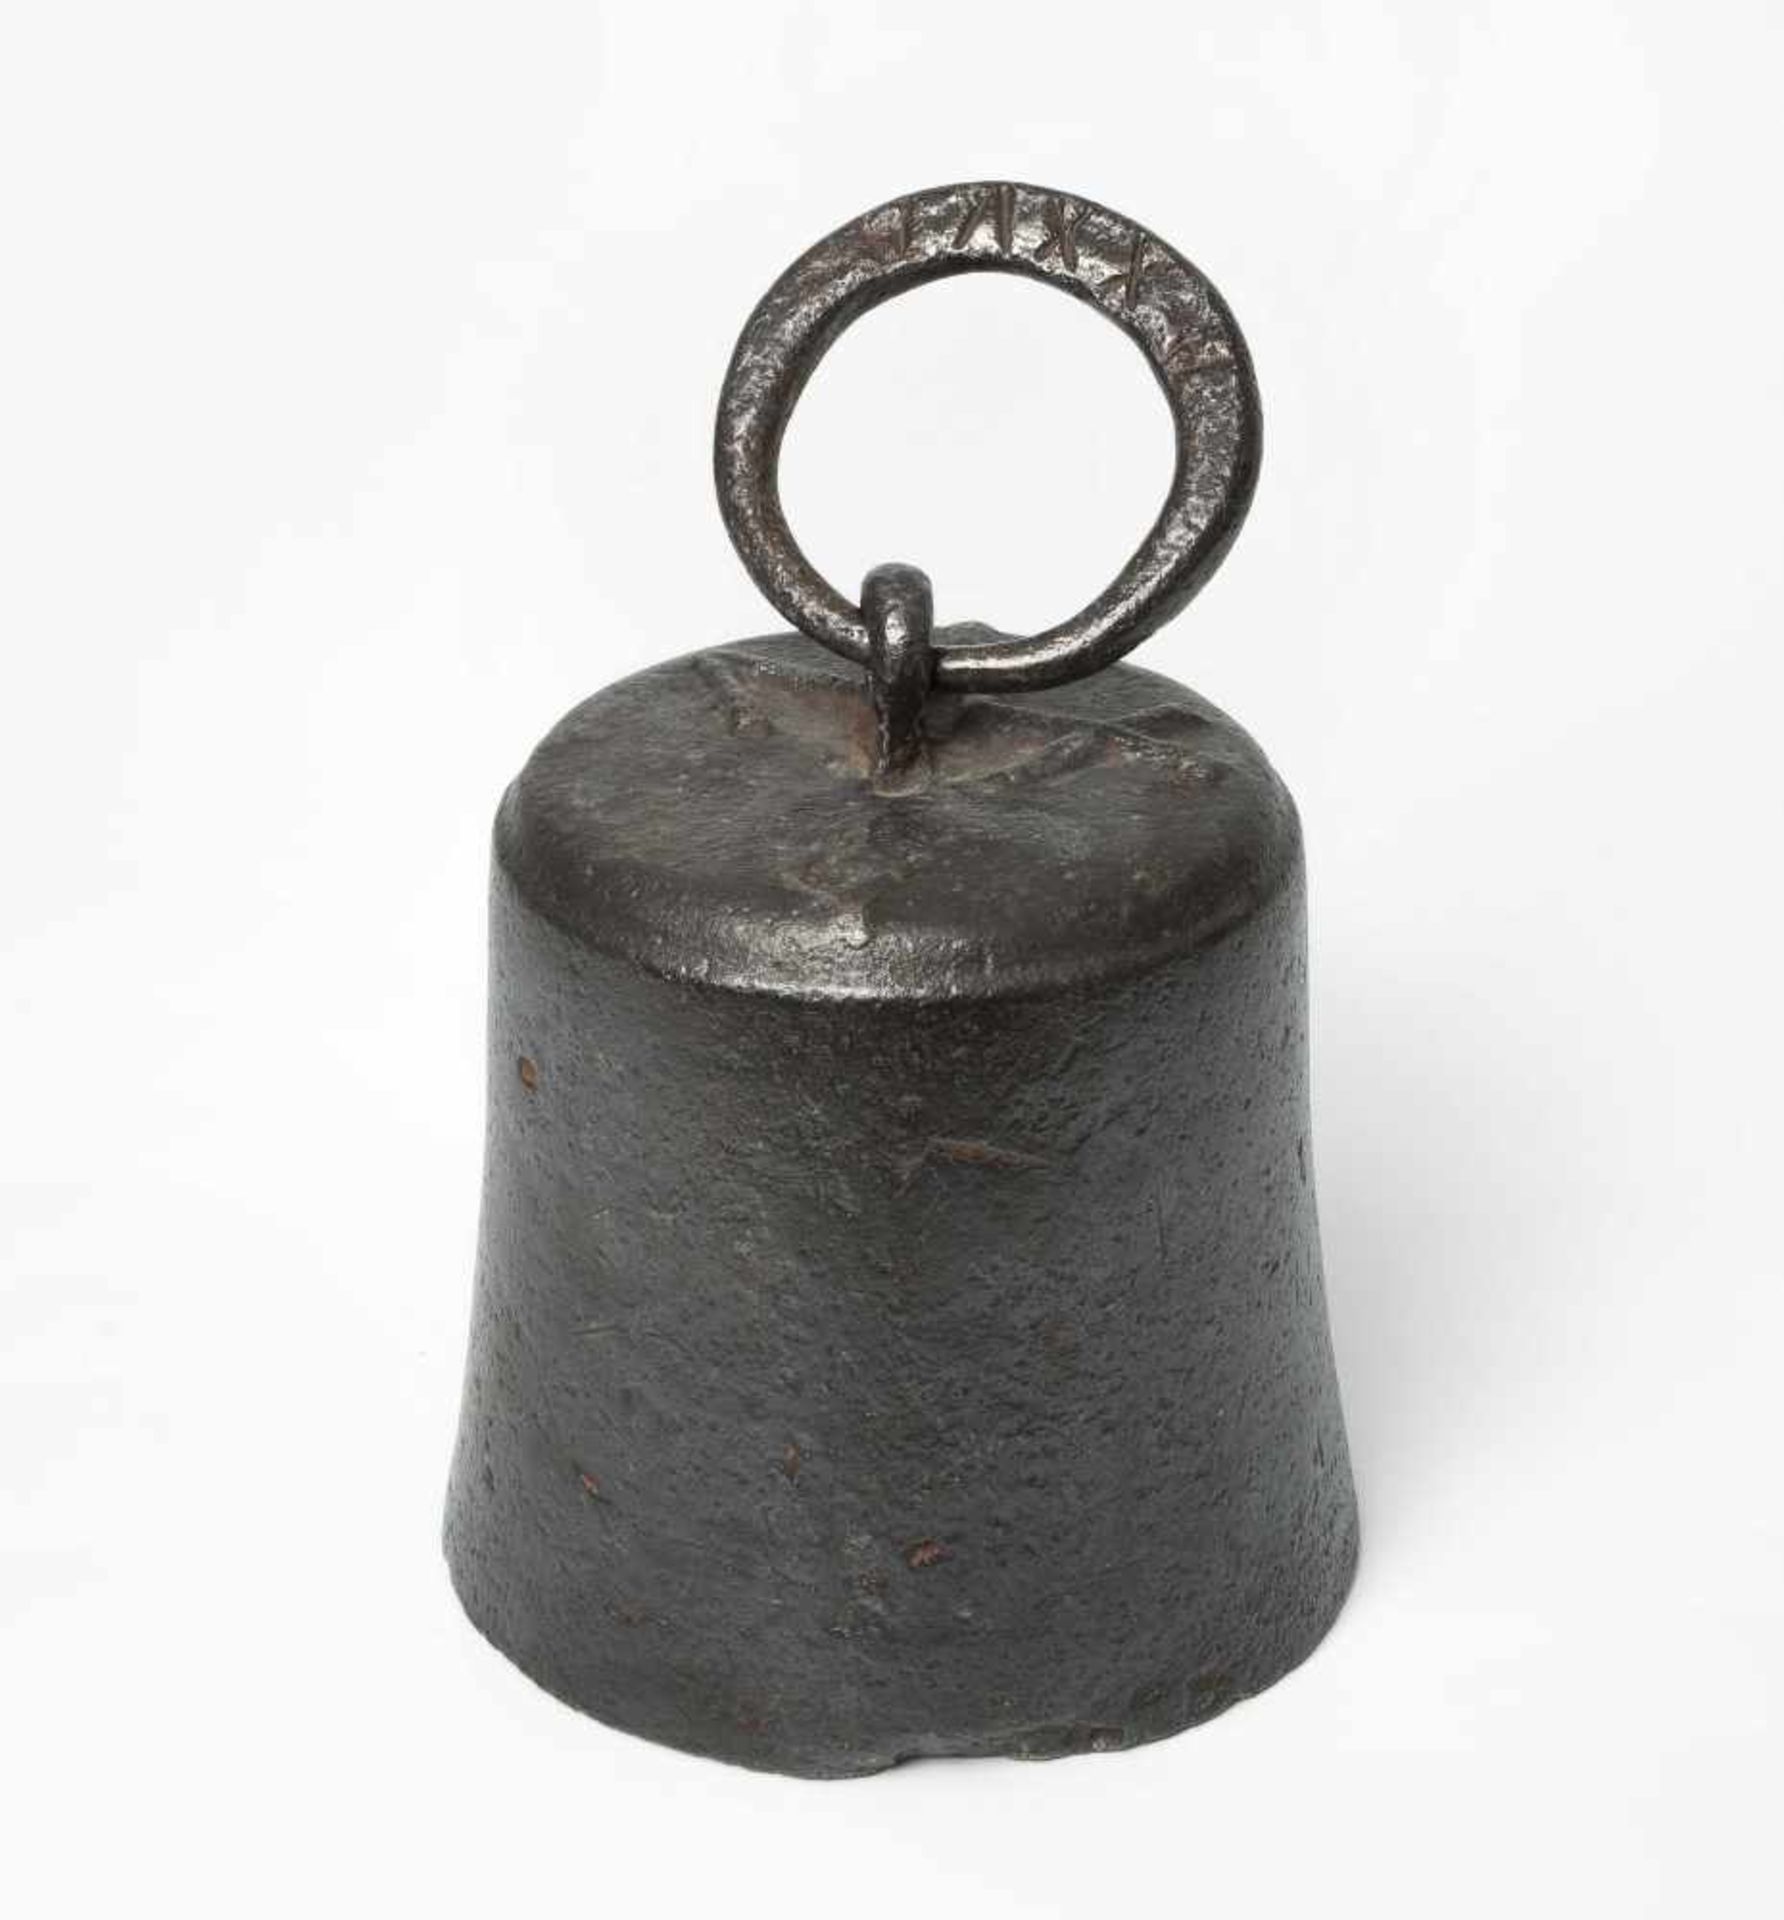 Grosses GewichtSchweiz, Kanton Aargau, um 1800. Eisen. Glockenförmig, mit Tragring. Gemarkt: "XXV"